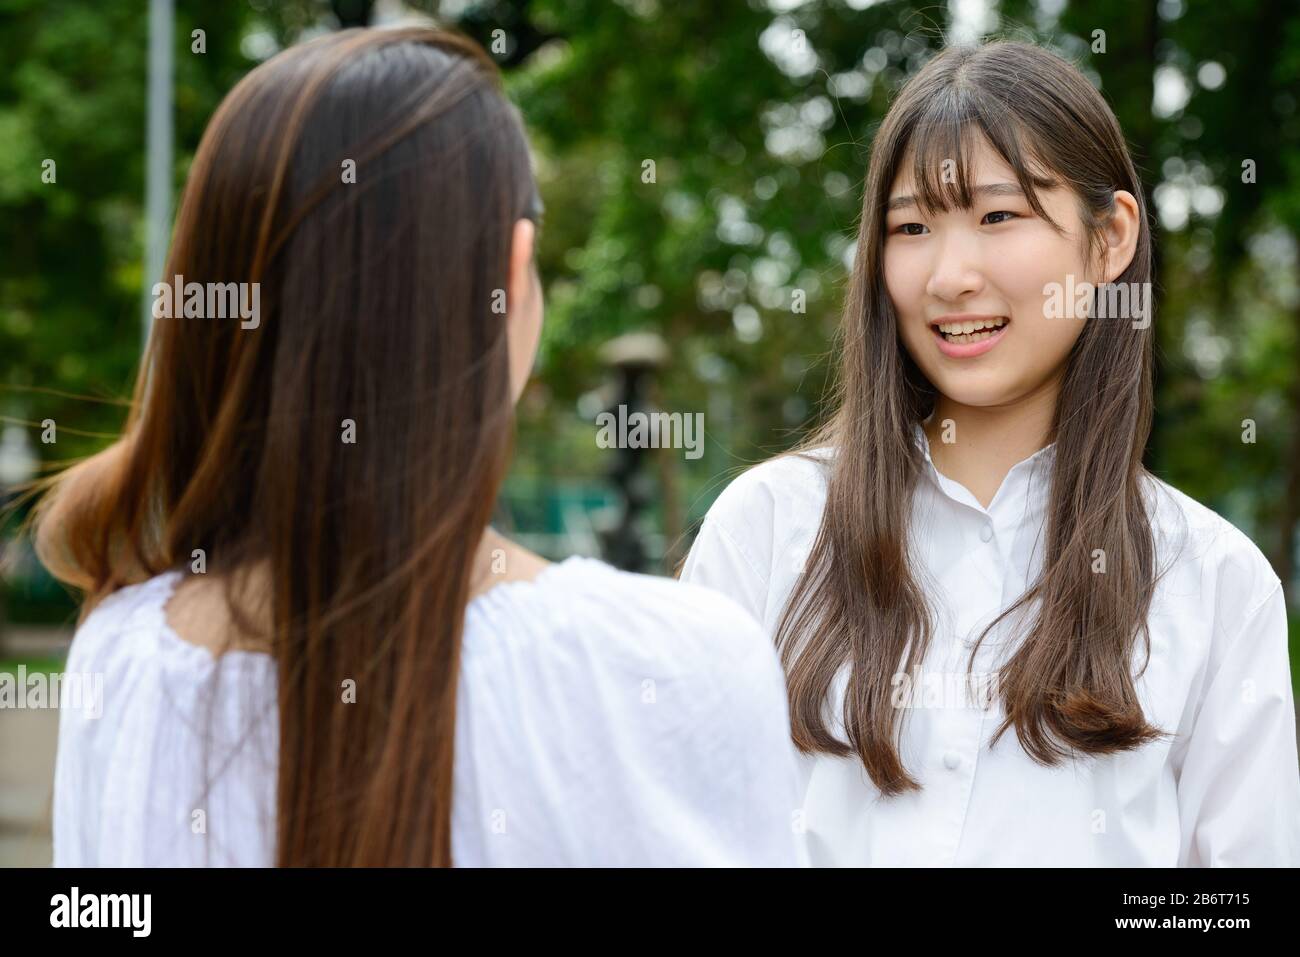 Zwei junge, schöne asiatische Teenager-Mädchen, die im Park sprechen Stockfoto